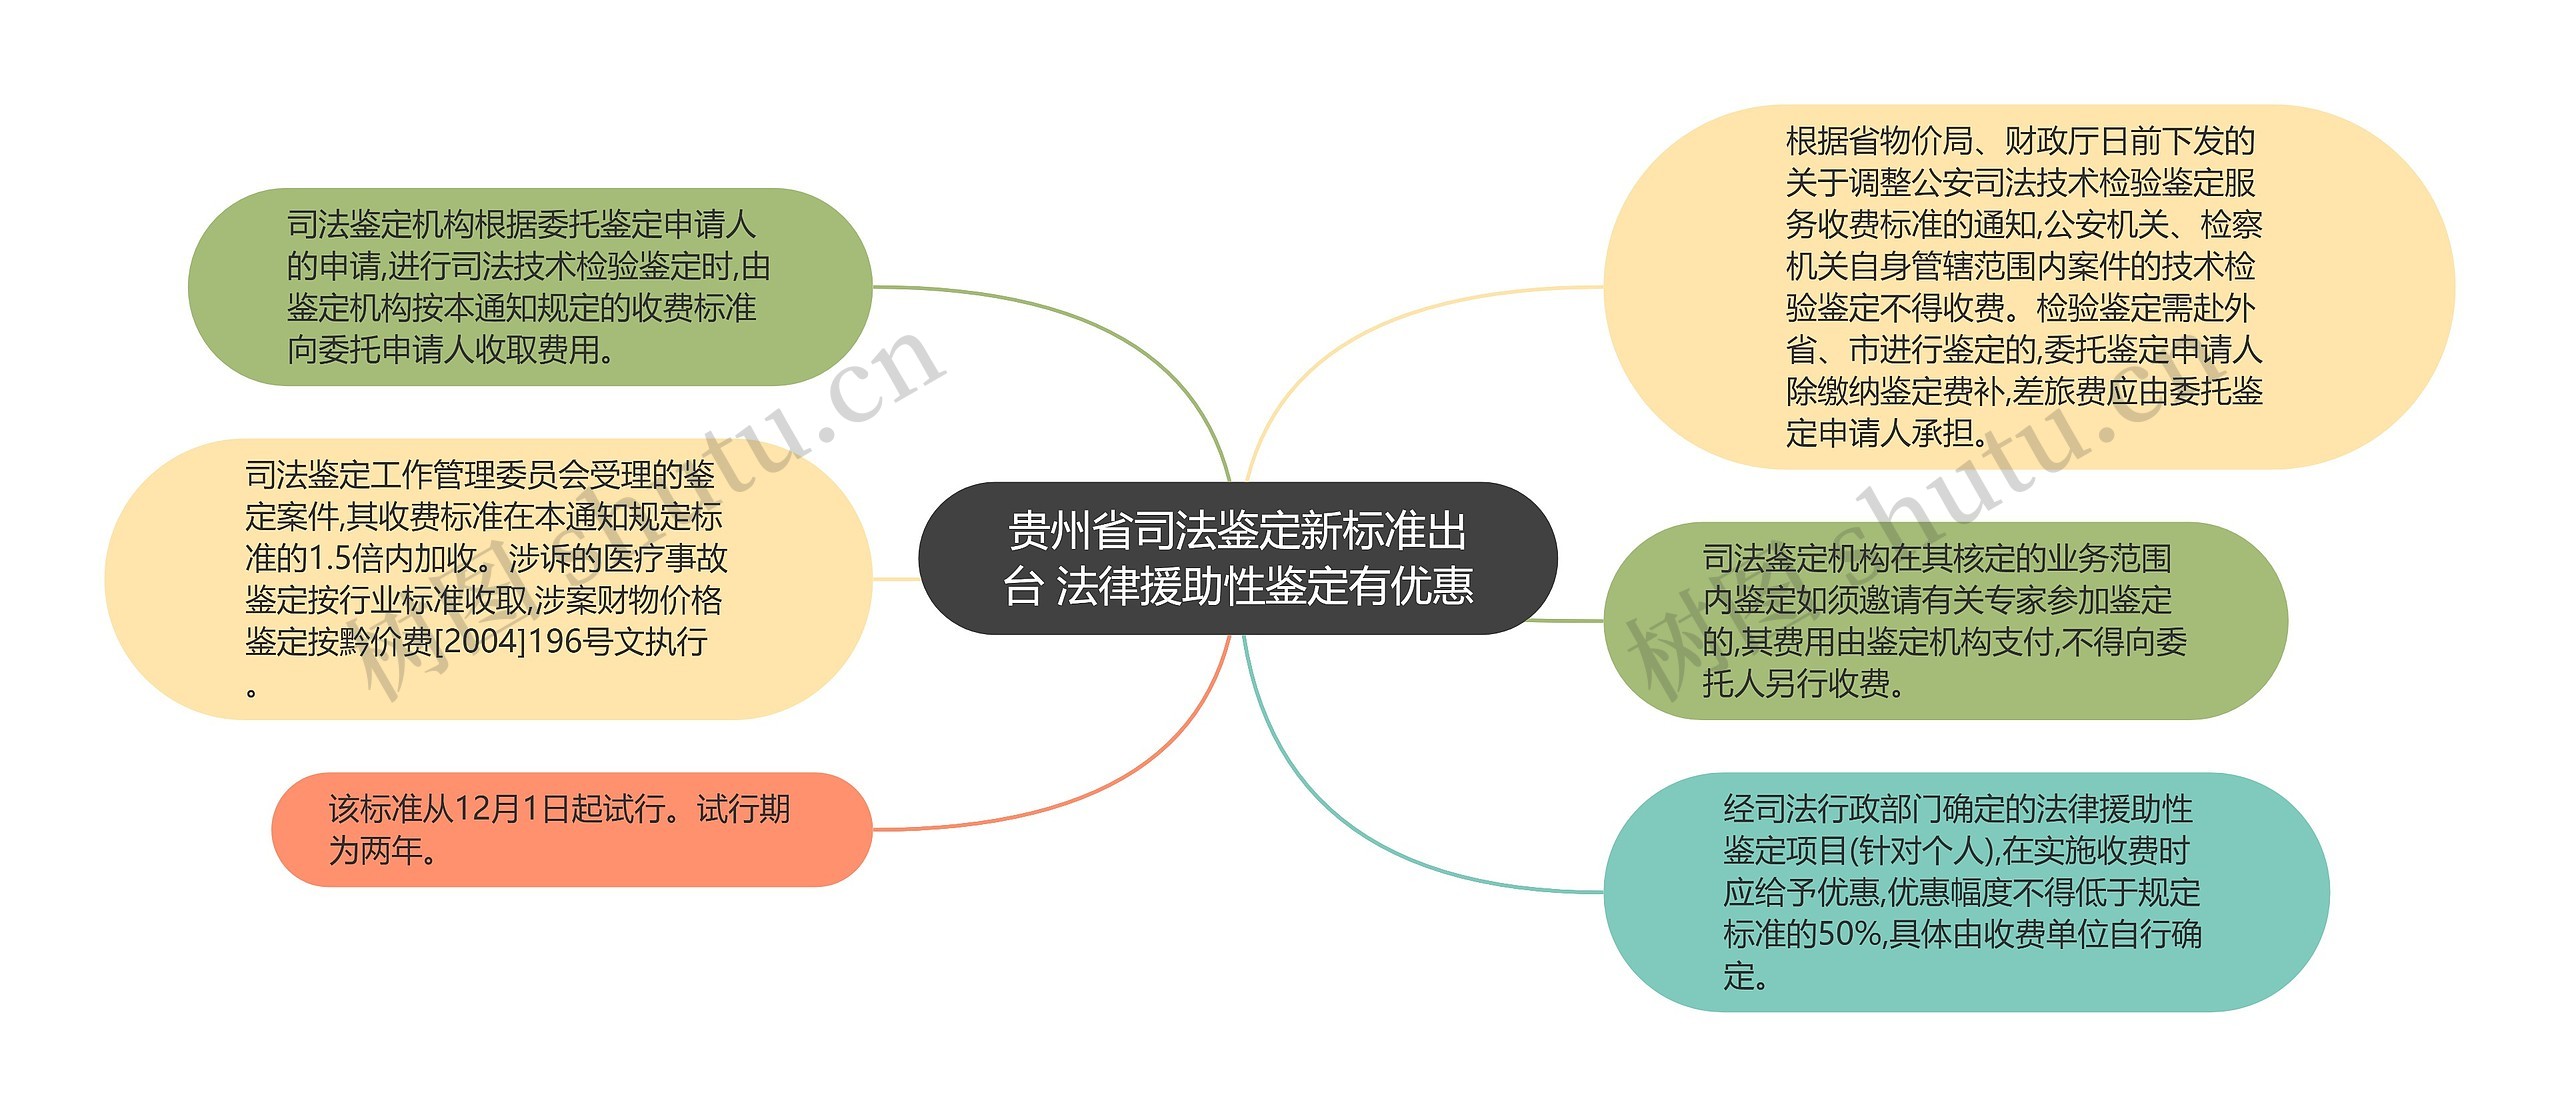 贵州省司法鉴定新标准出台 法律援助性鉴定有优惠